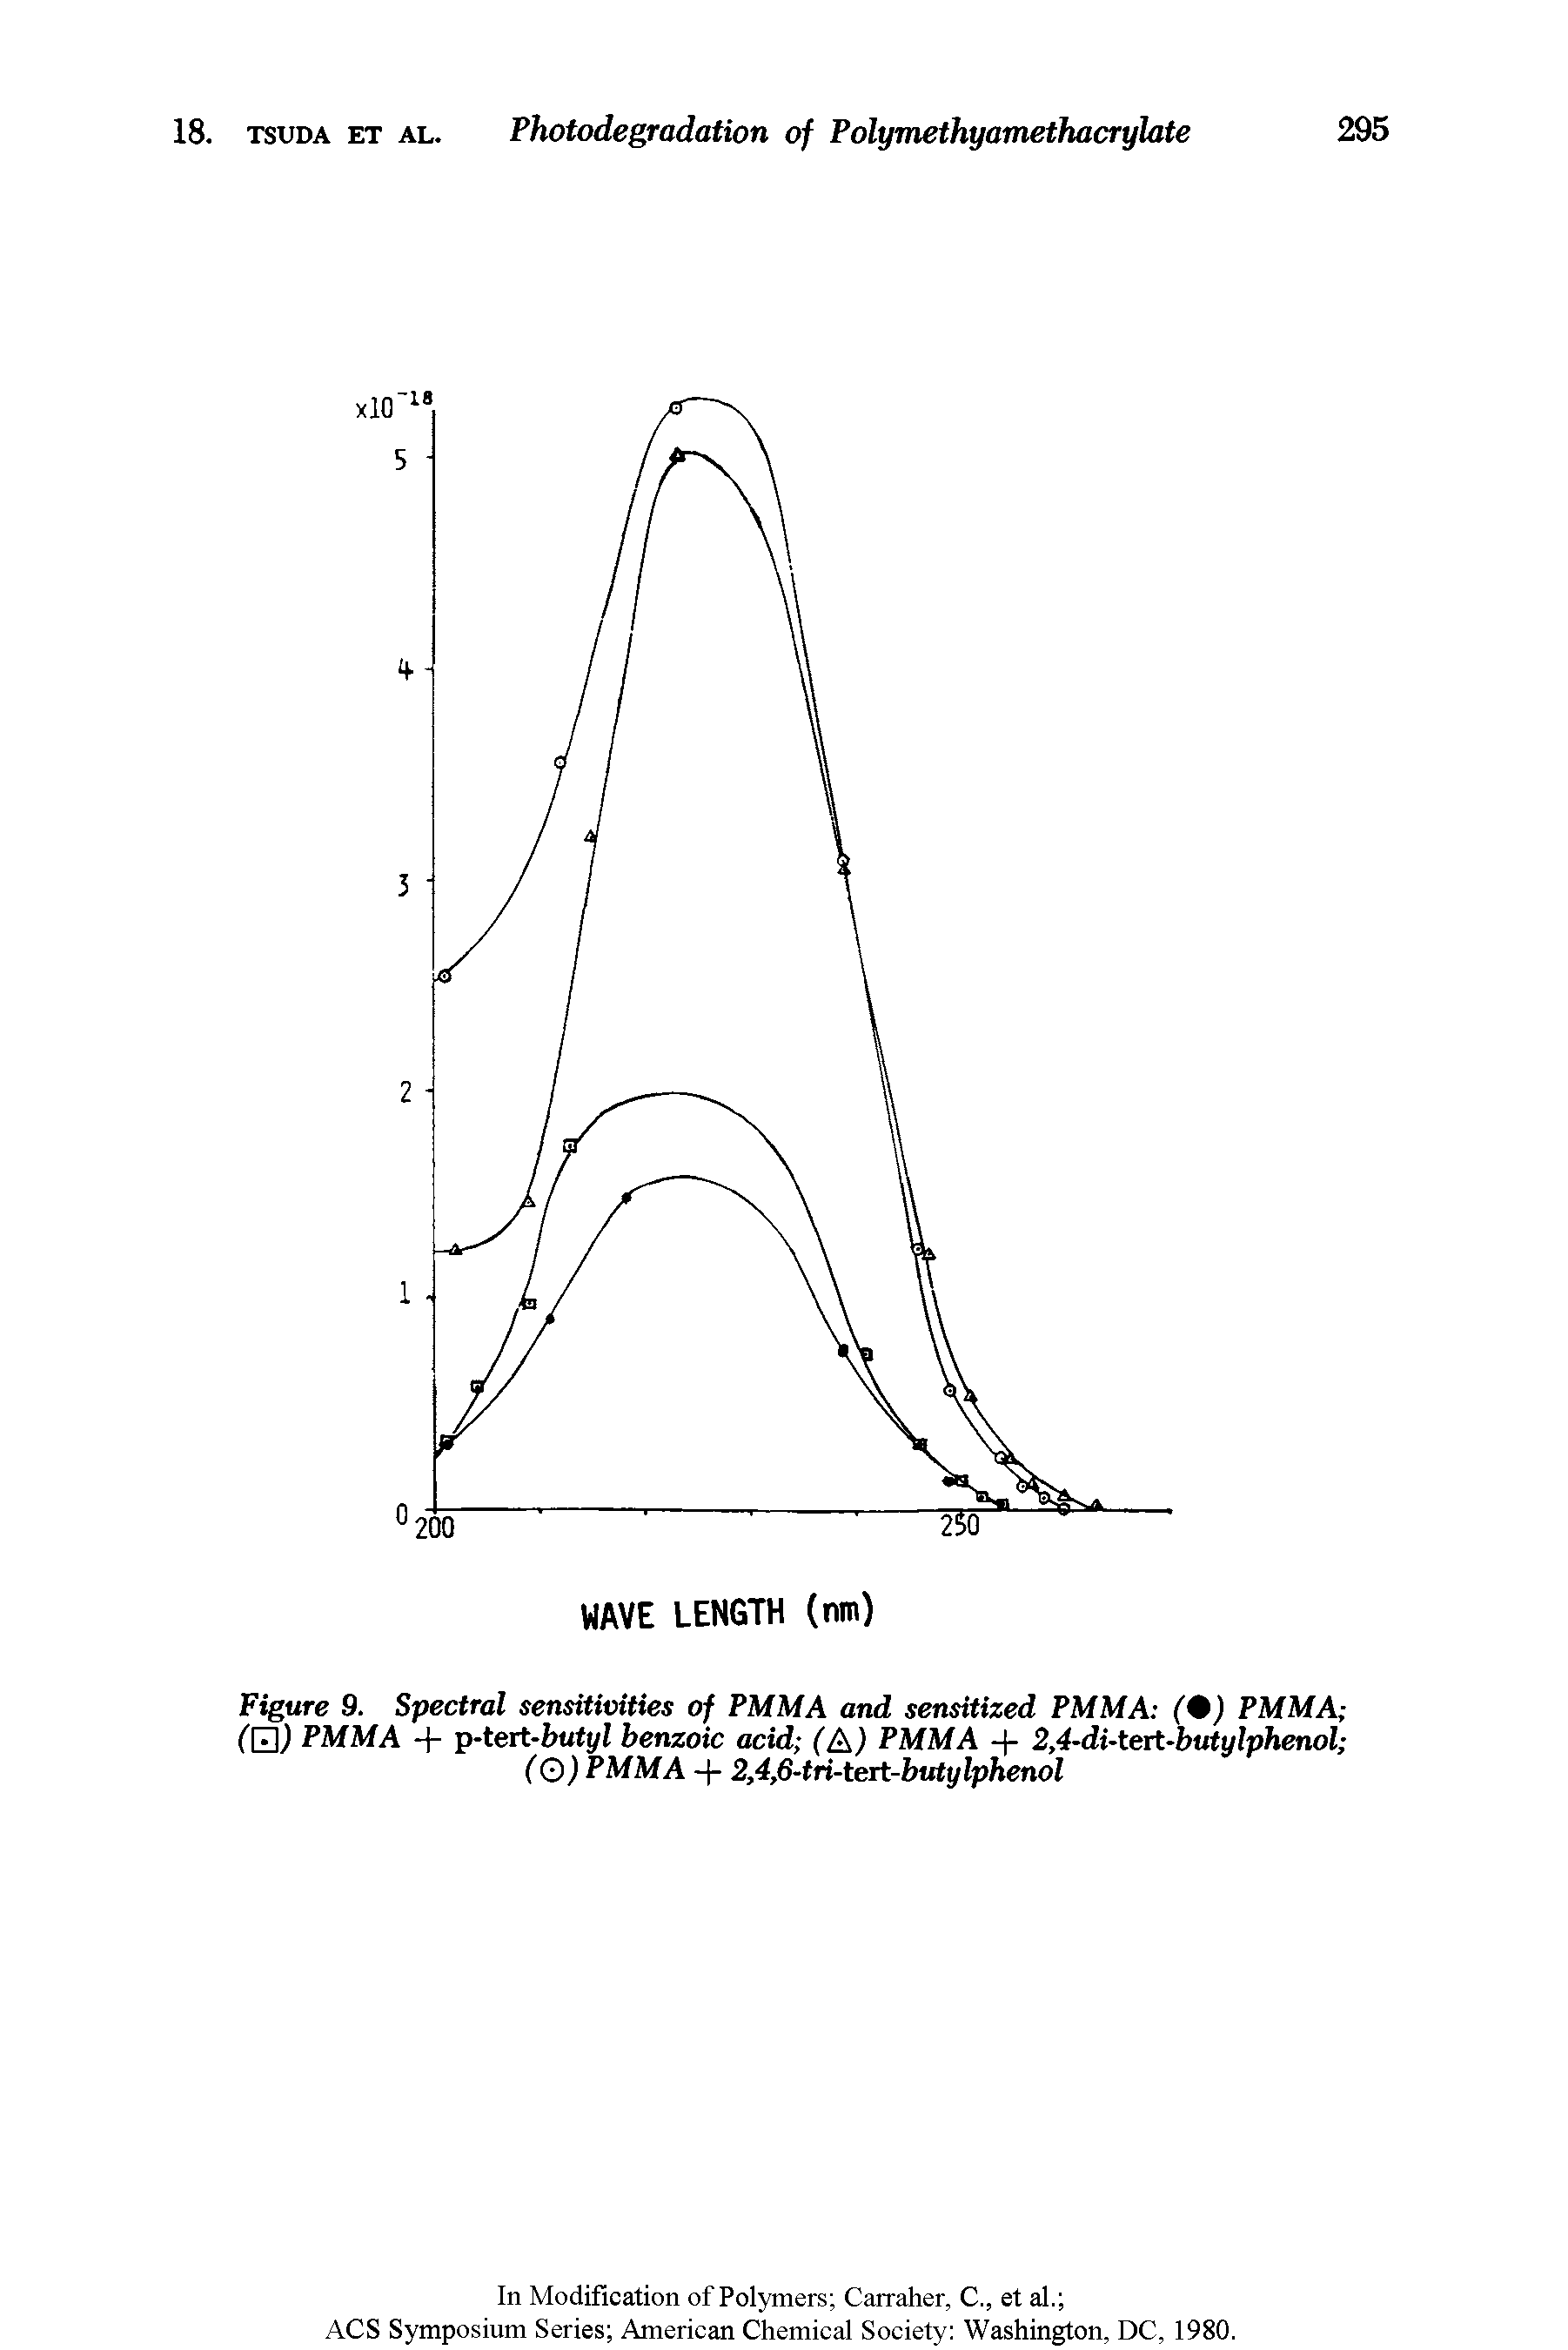 Figure 9. Spectral sensitivities of PMMA and sensitized PMMA ( ) PMMA (tH) PMMA + p-tert-bvtyl benzoic acid (A) PMMA -)- 2,4-di-tert-butylphenol (Q) PMMA -)- 2,4,6-tri-tert-butylphenol...